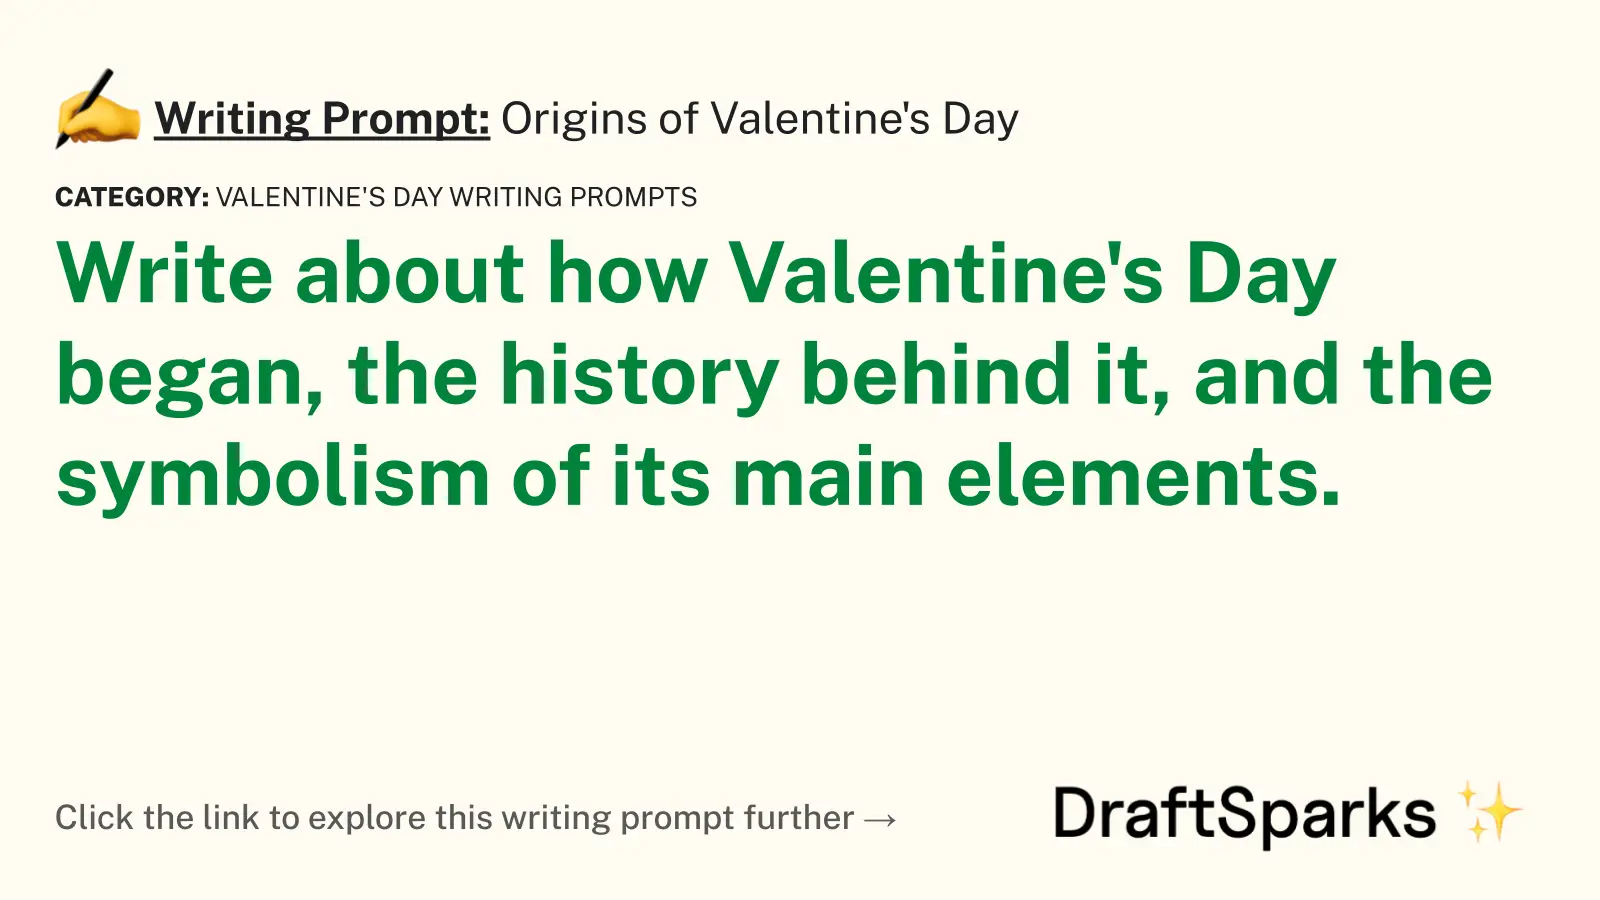 Origins of Valentine’s Day